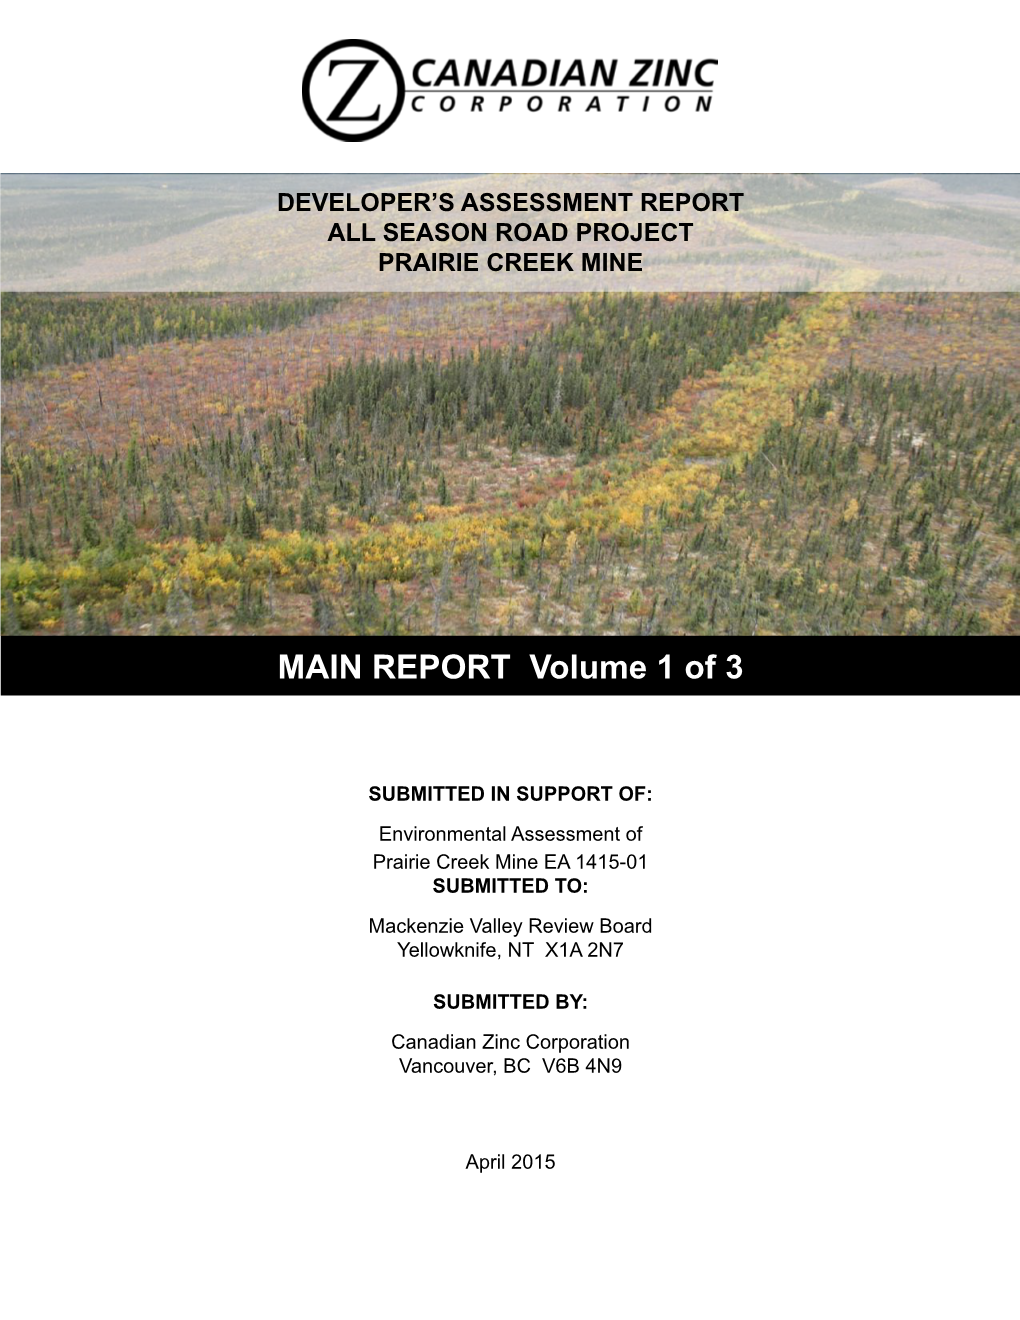 EA1415-01 Developer's Assessment Report